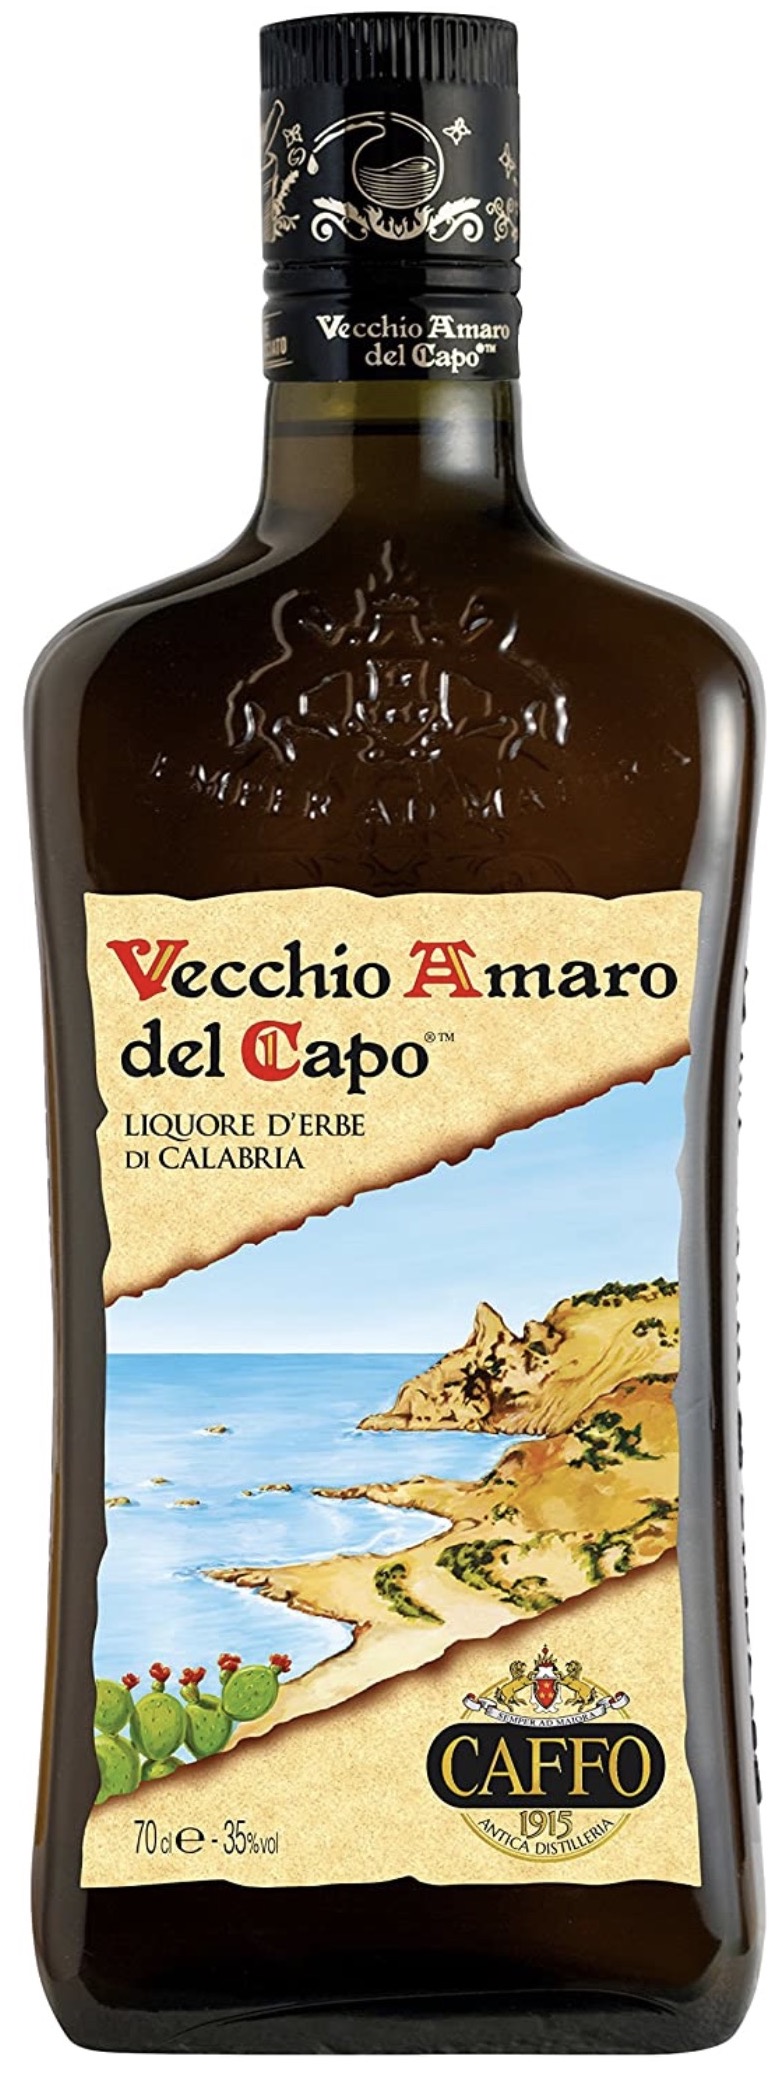 Vecchio Amaro del Capo 35% vol. 0,7L